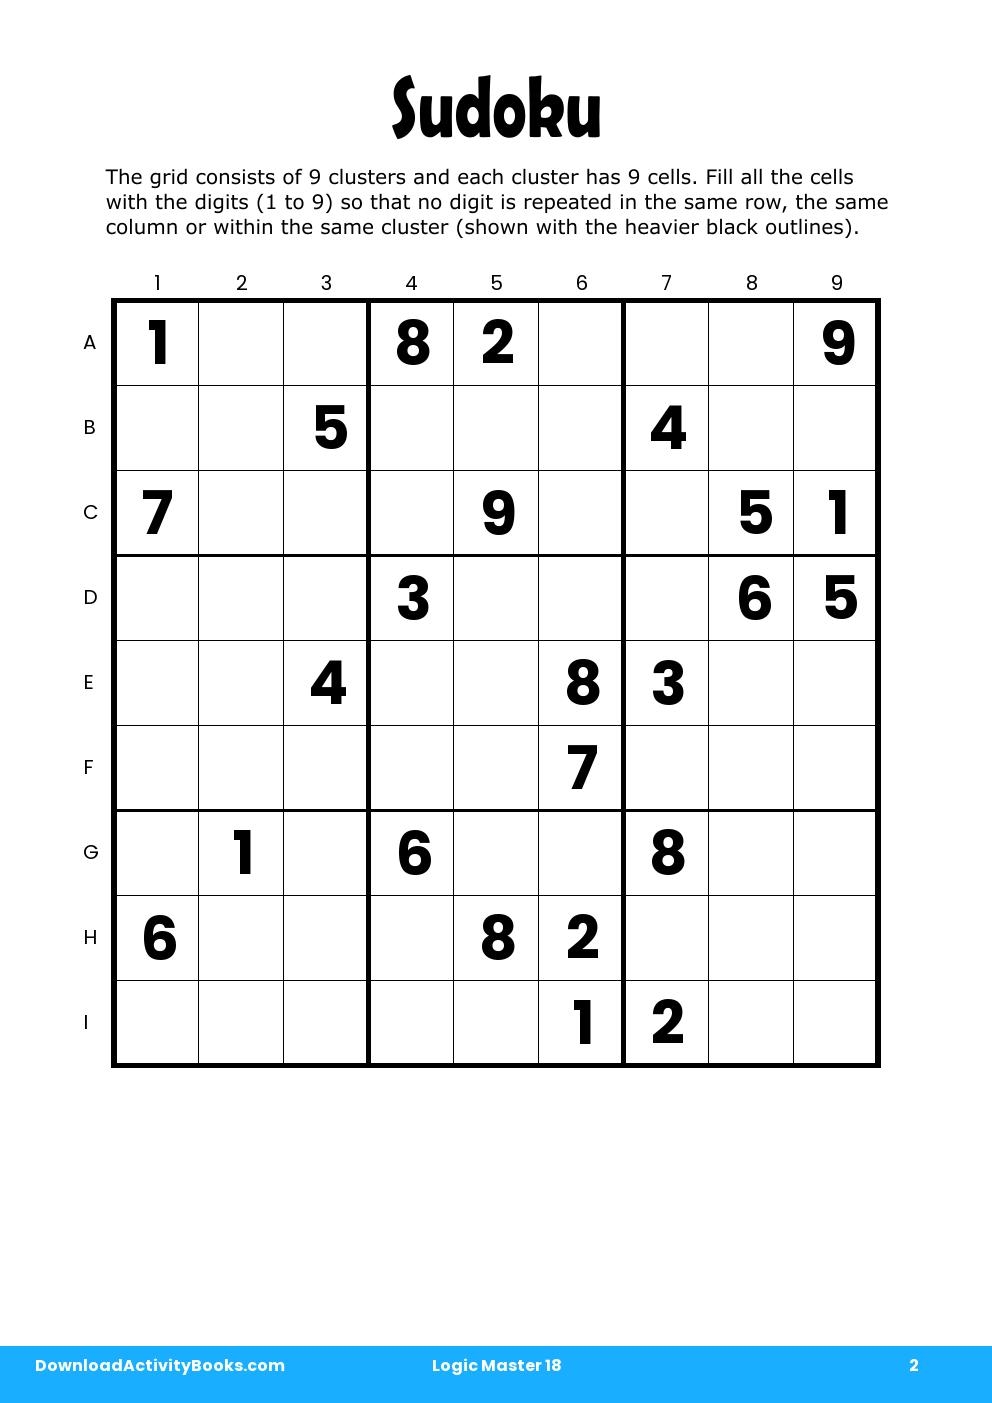 Sudoku in Logic Master 18